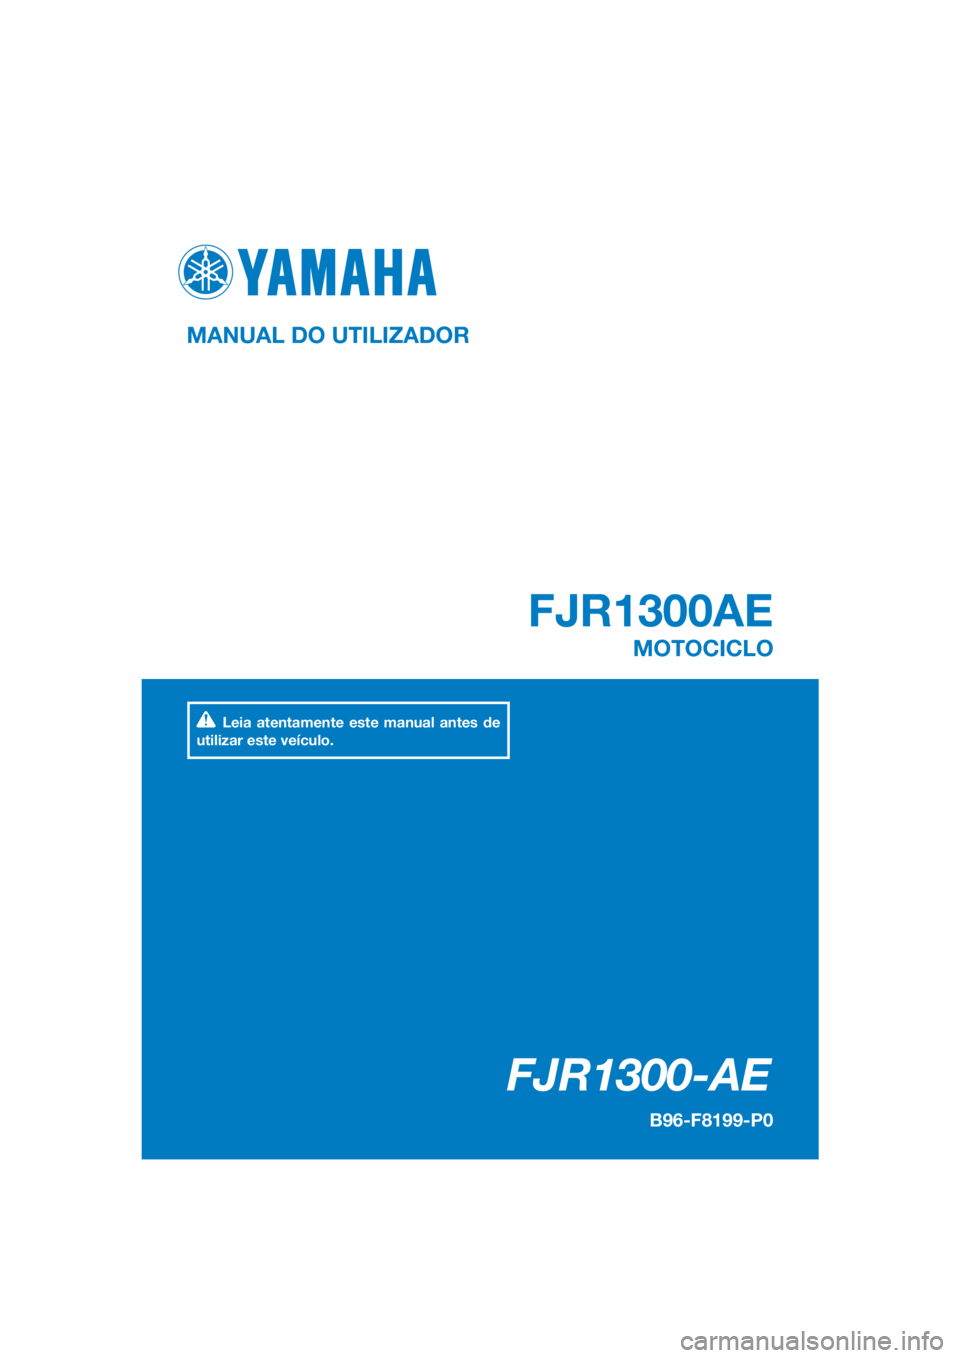 YAMAHA FJR1300AE 2016  Manual de utilização (in Portuguese) DIC183
FJR1300-AE
FJR1300AE
MANUAL DO UTILIZADOR
B96-F8199-P0
MOTOCICLO
Leia atentamente este manual antes de 
utilizar este veículo.
[Portuguese  (P)] 